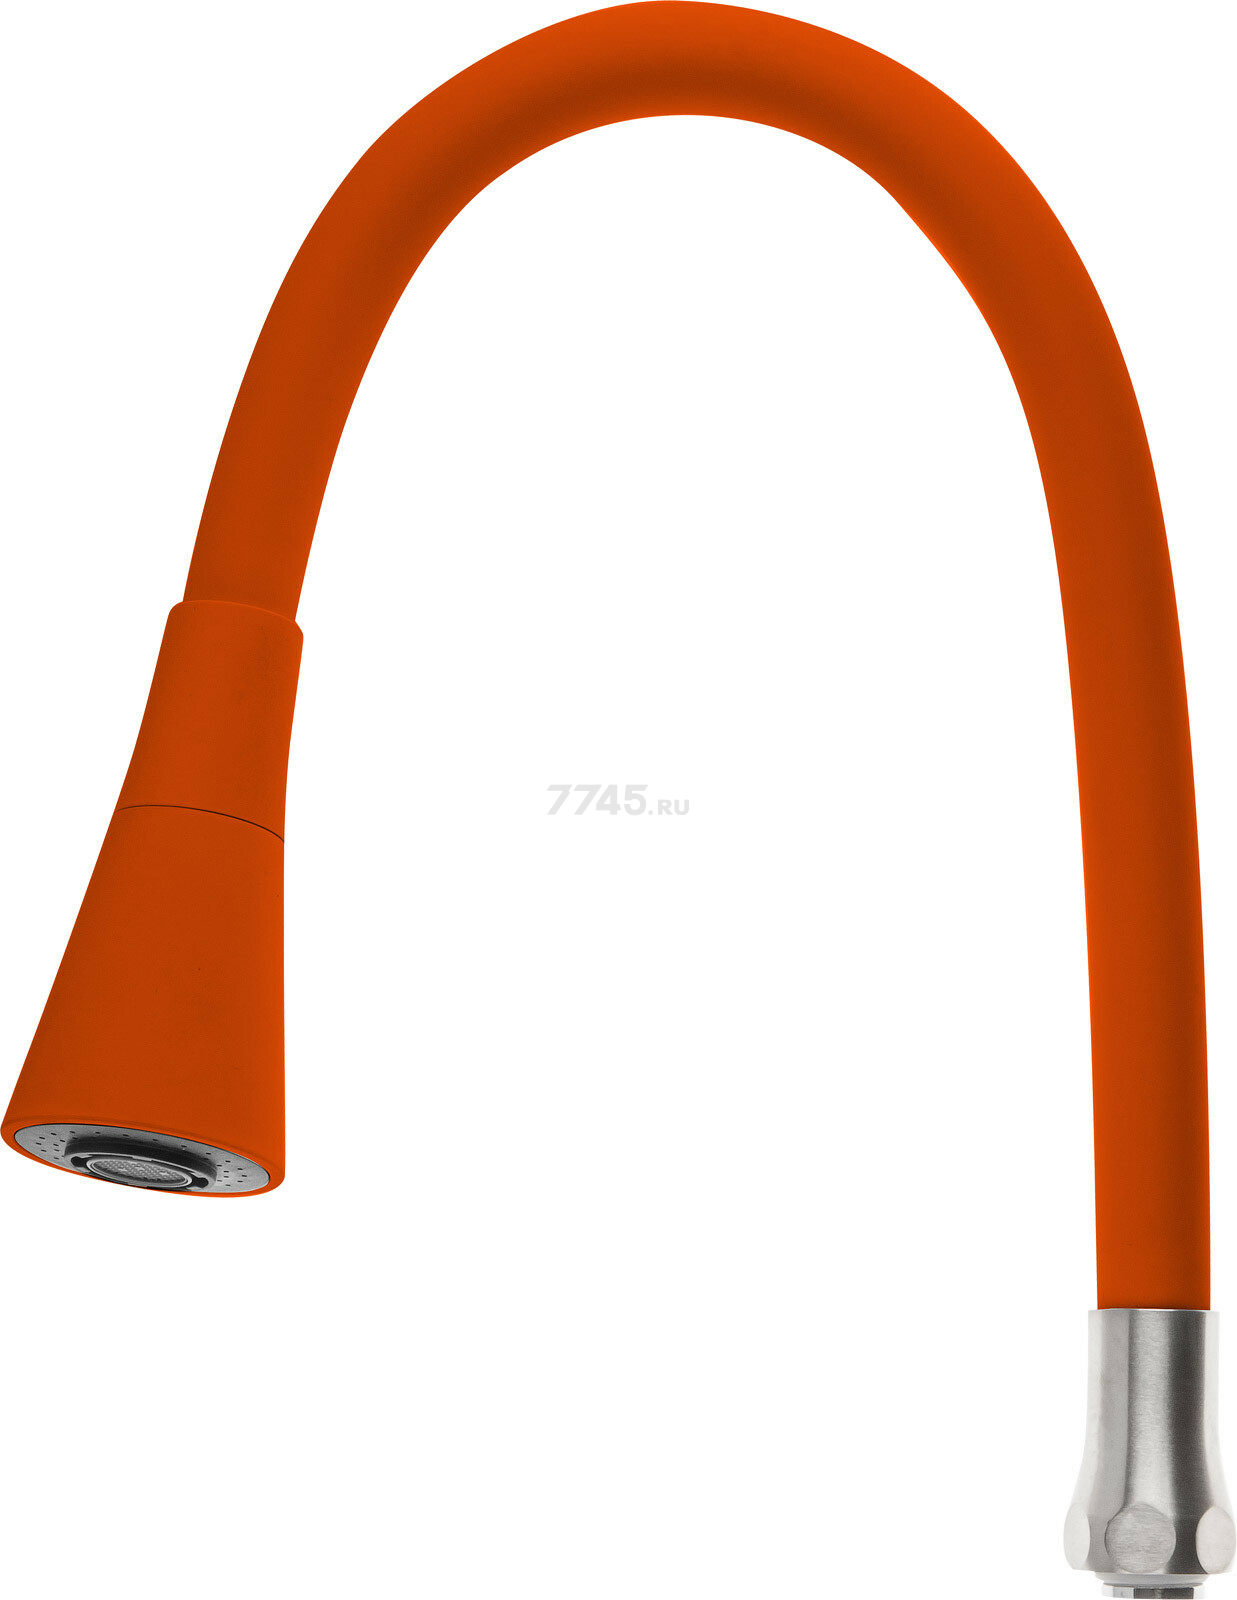 Излив гибкий для смесителя AV Engineering оранжевый (AVZAP-2SRNG)